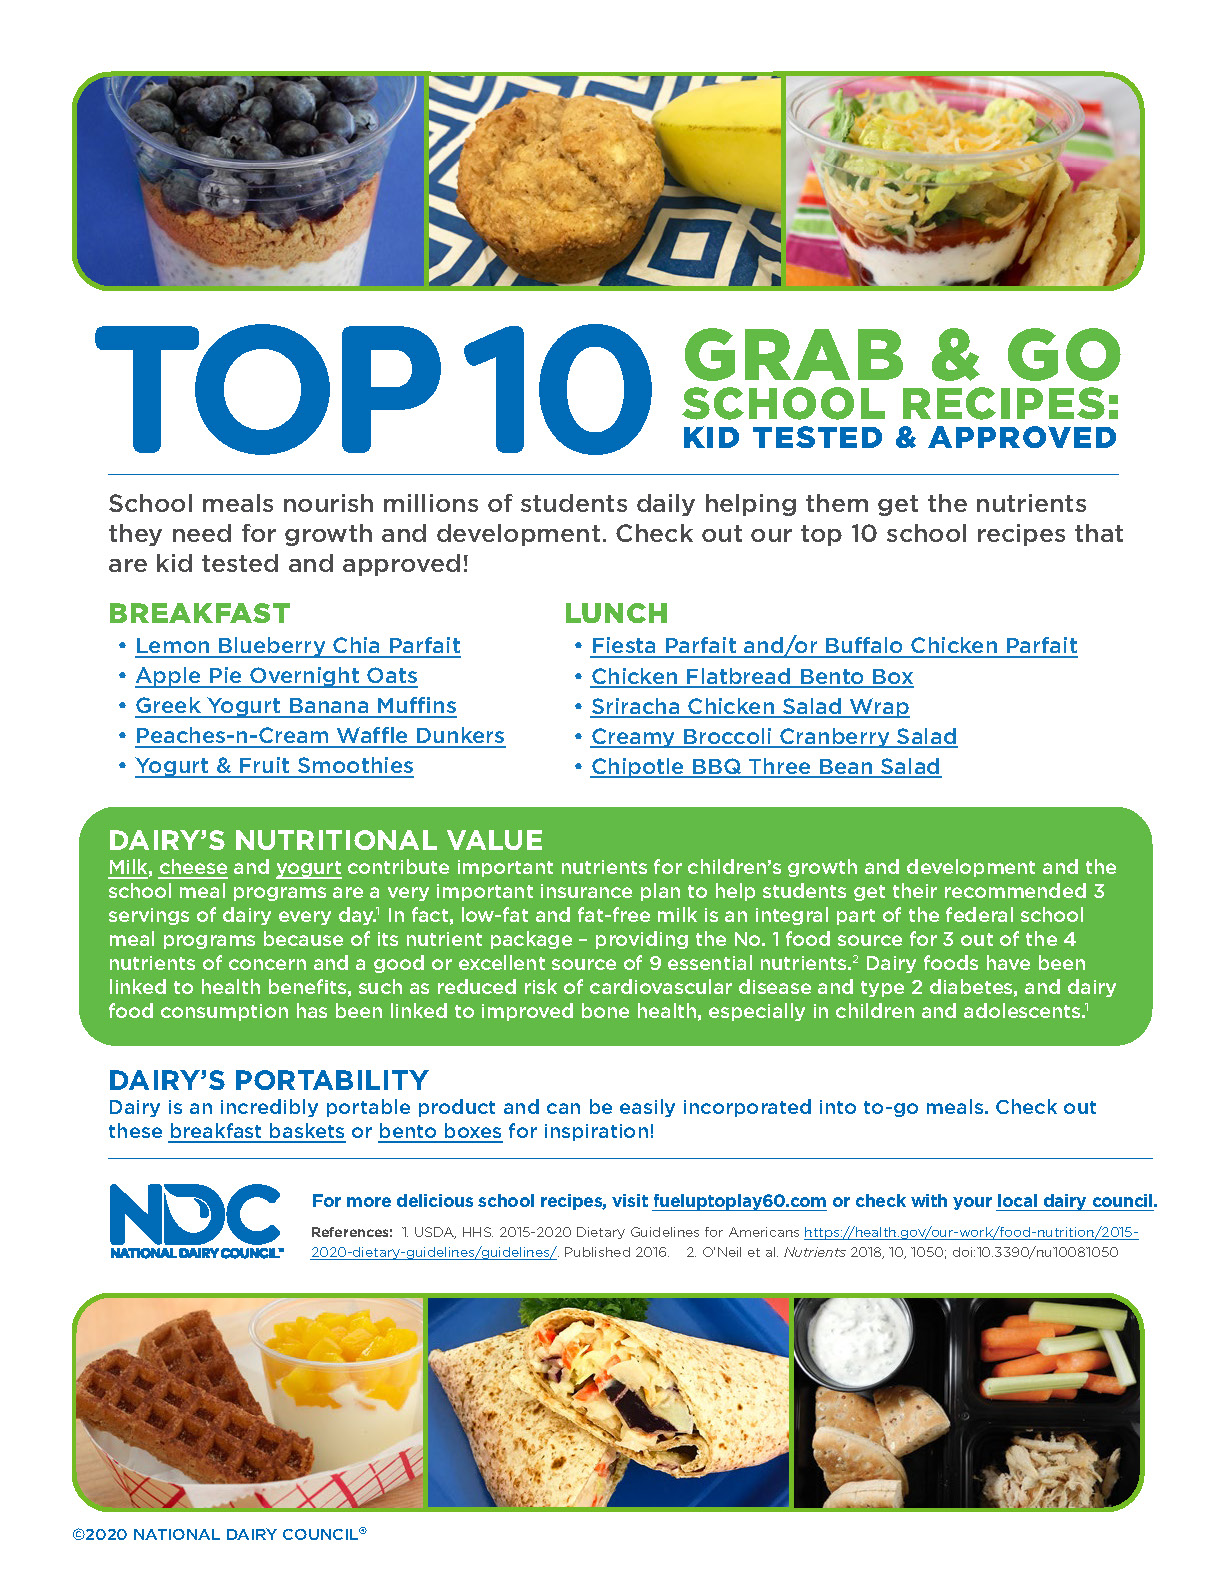 ANDC Top 10 Grab & Go School Recipes Main Image